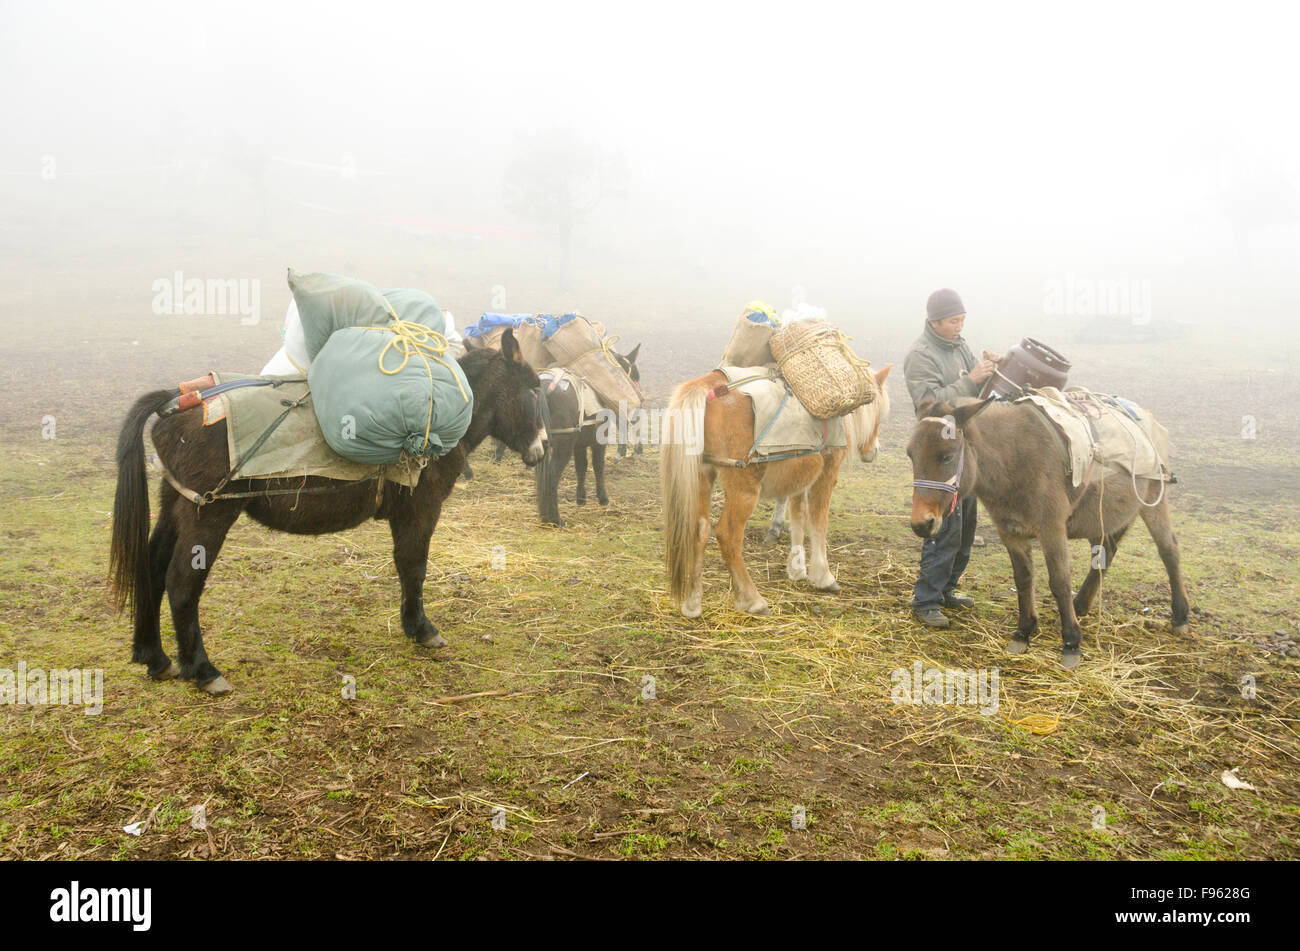 Un portier prépare les fournitures au sommet de ses mules à Bumdra, un trek dans l'ouest Bhoutan Banque D'Images